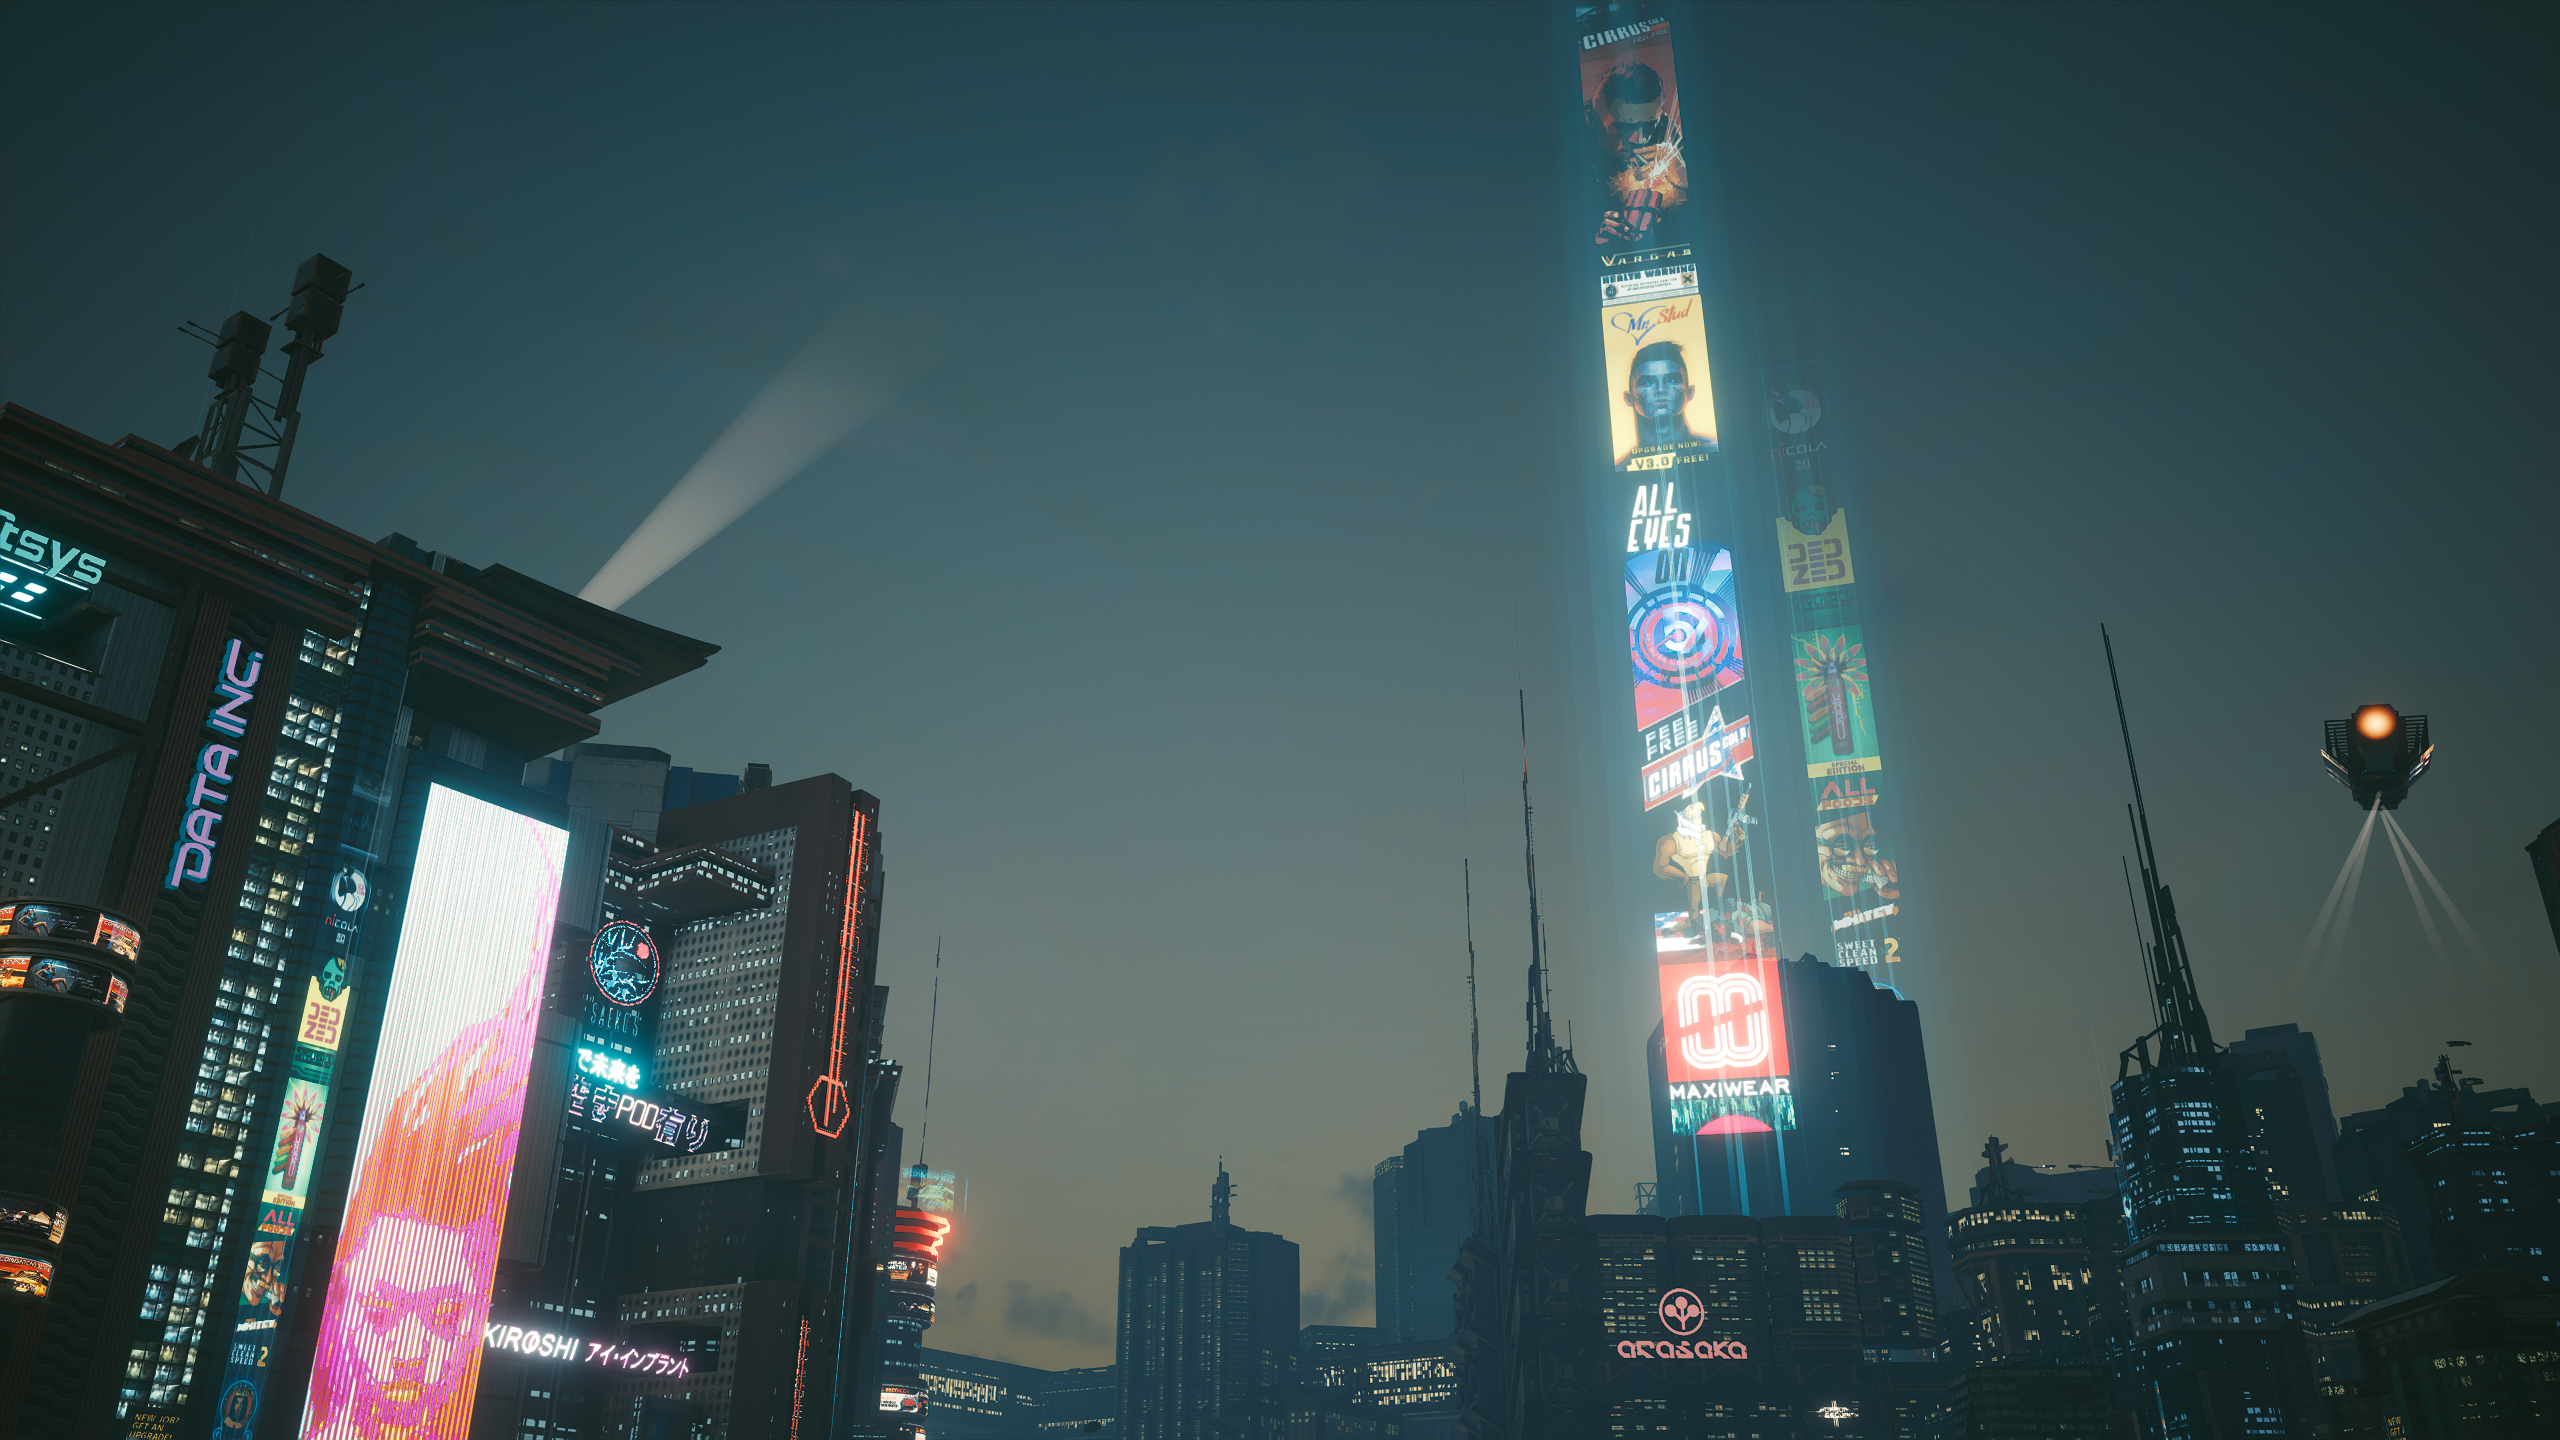 General 2560x1440 Cyberpunk 2077 cityscape futuristic futuristic city neon